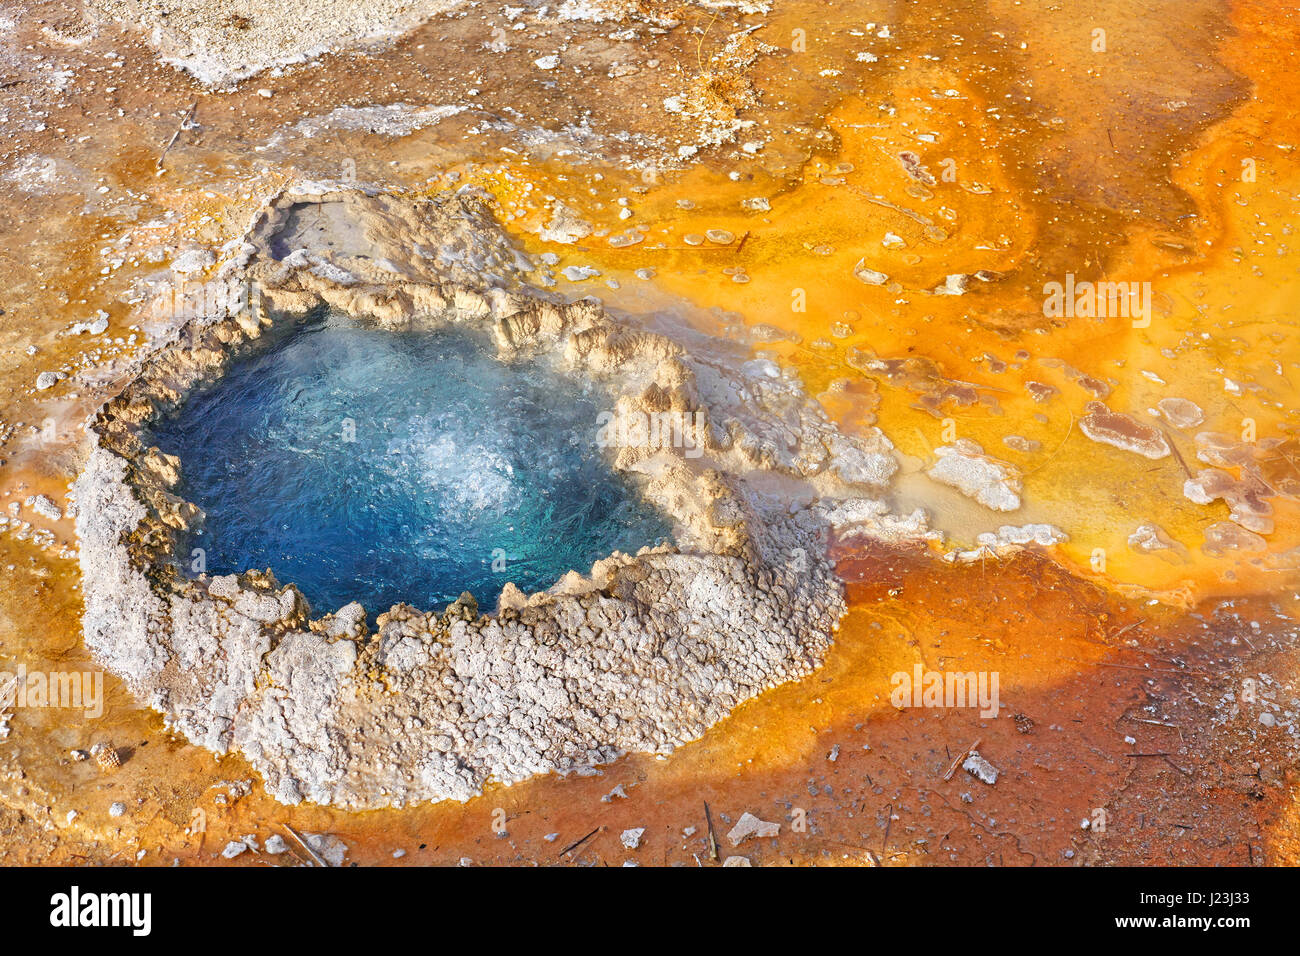 Nahaufnahme Bild von einem kleinen bunten Warmwasserbecken im Yellowstone-Nationalpark, Wyoming, USA. Stockfoto